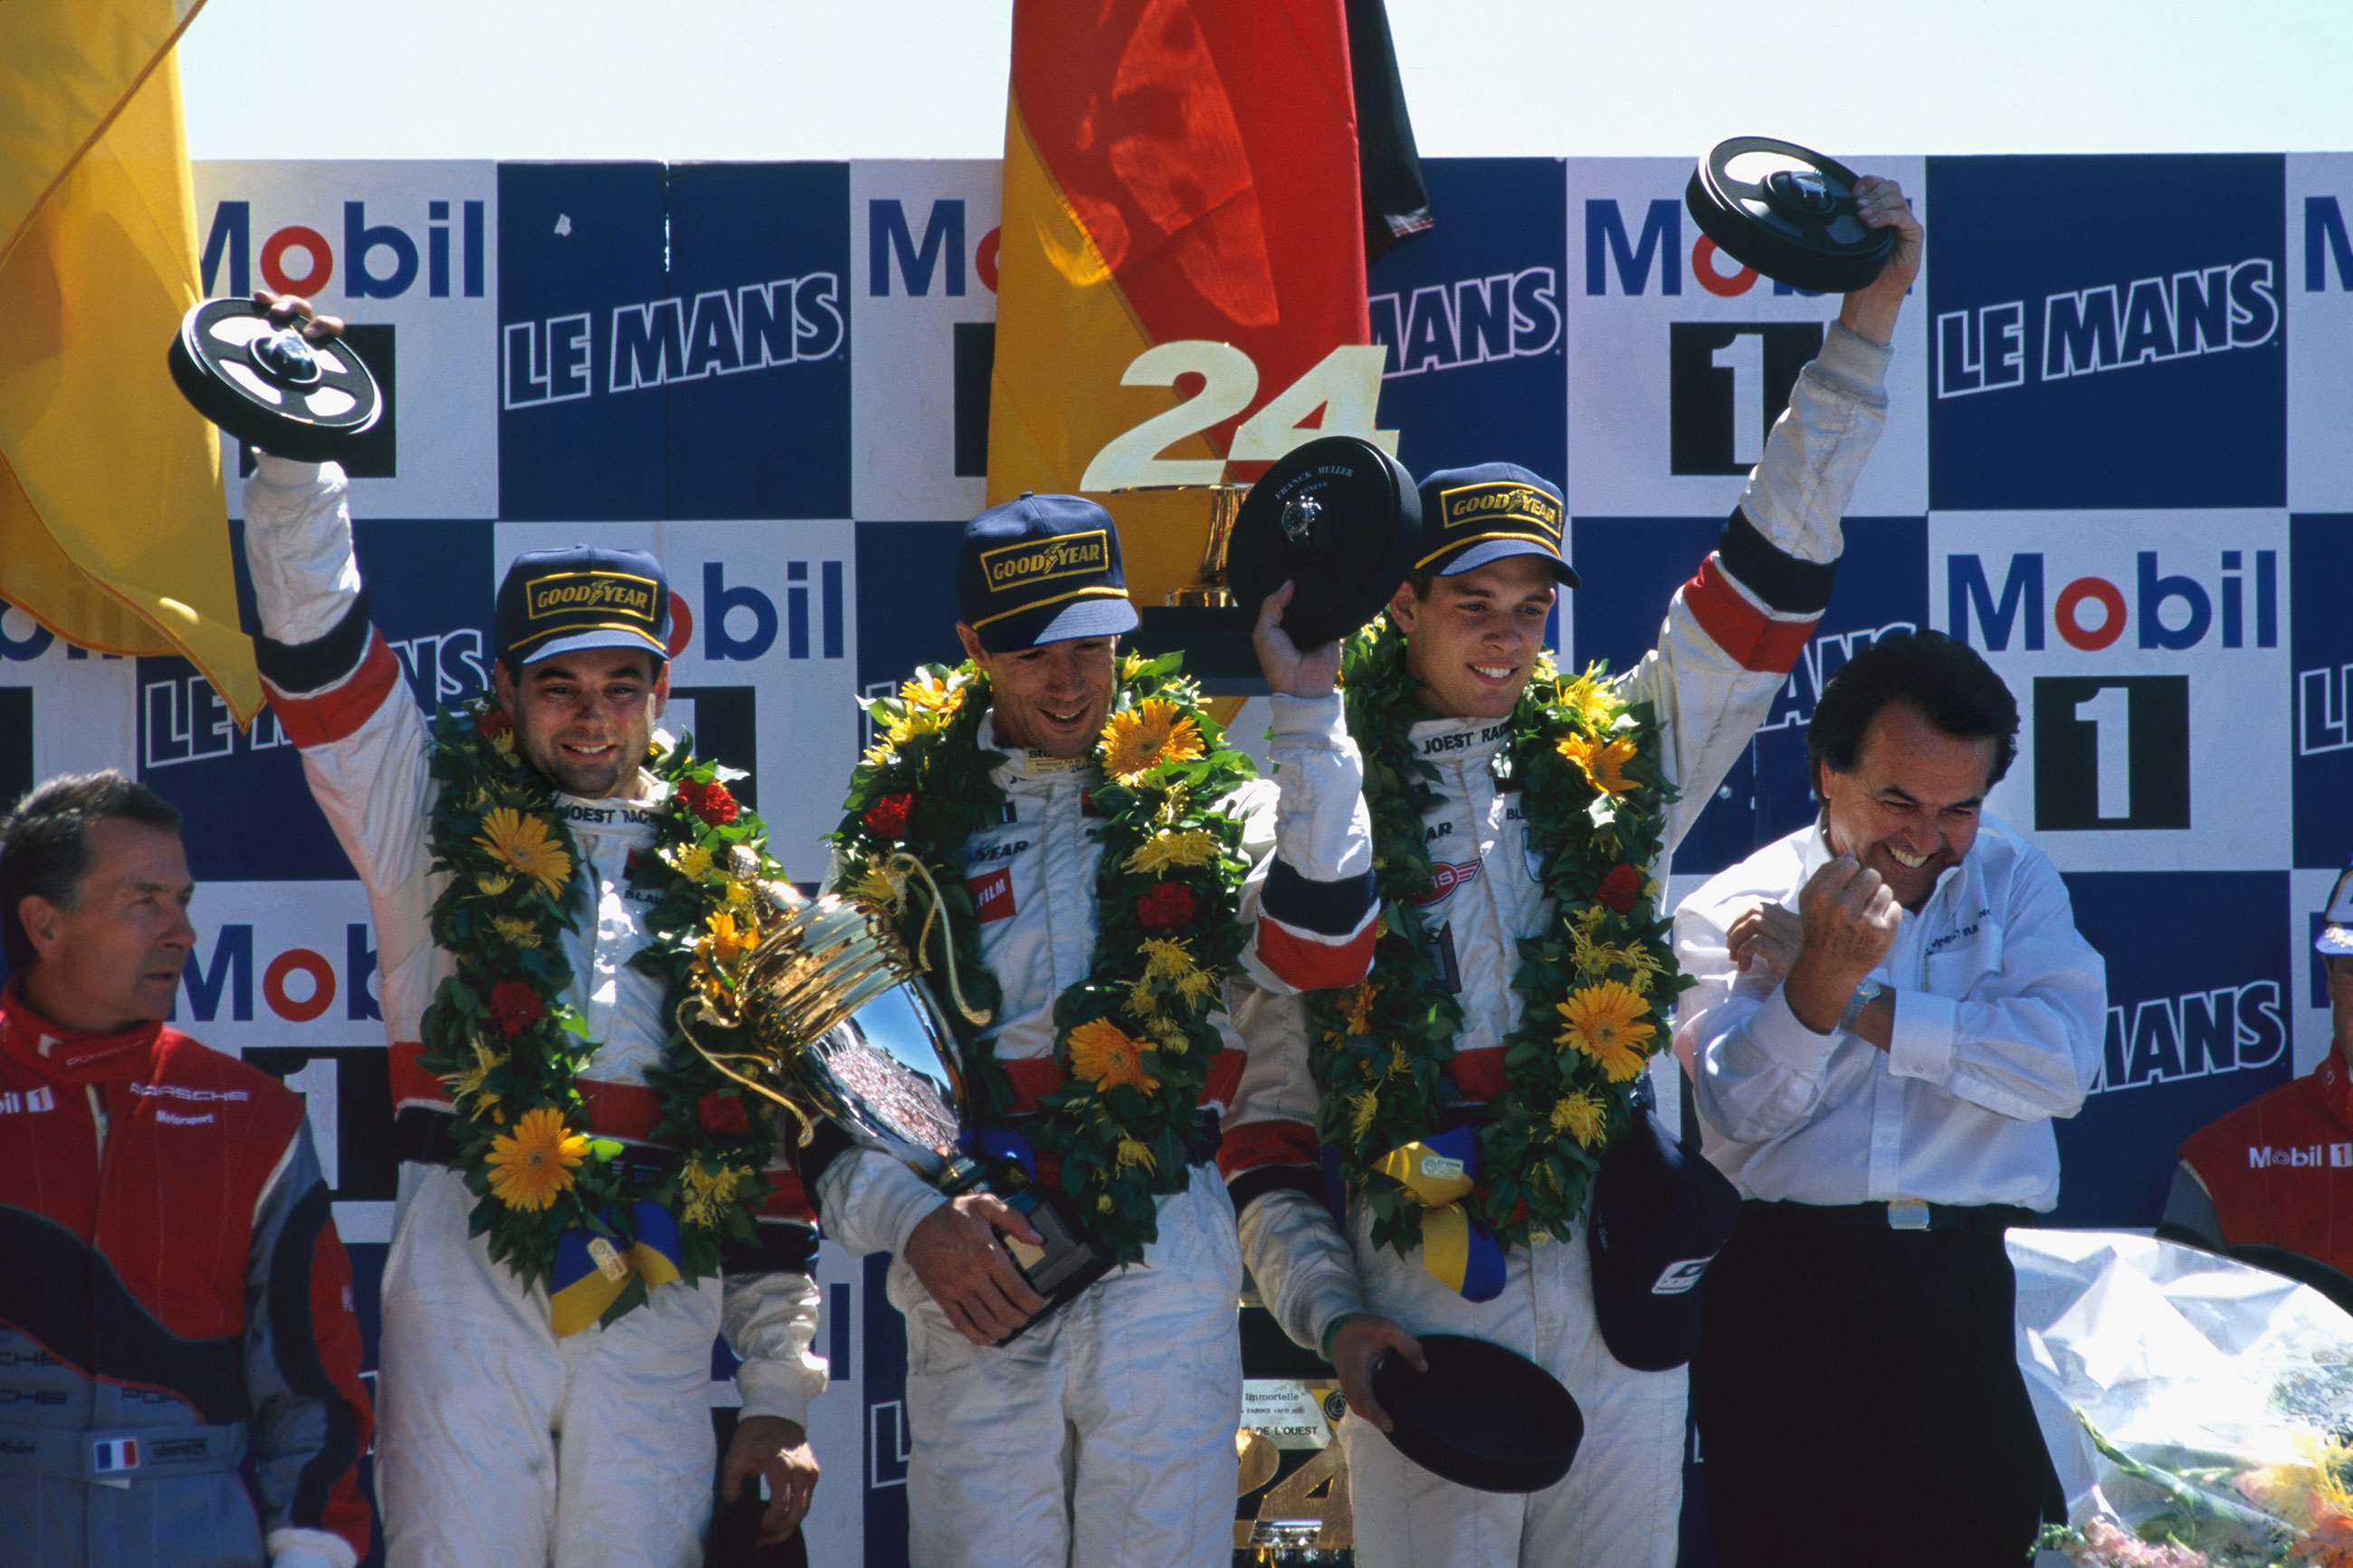 youngest-race-winners-3-le-mans-alexander-wurz-age-le-mans-1996-lat-mi-goodwood-15072020.jpg